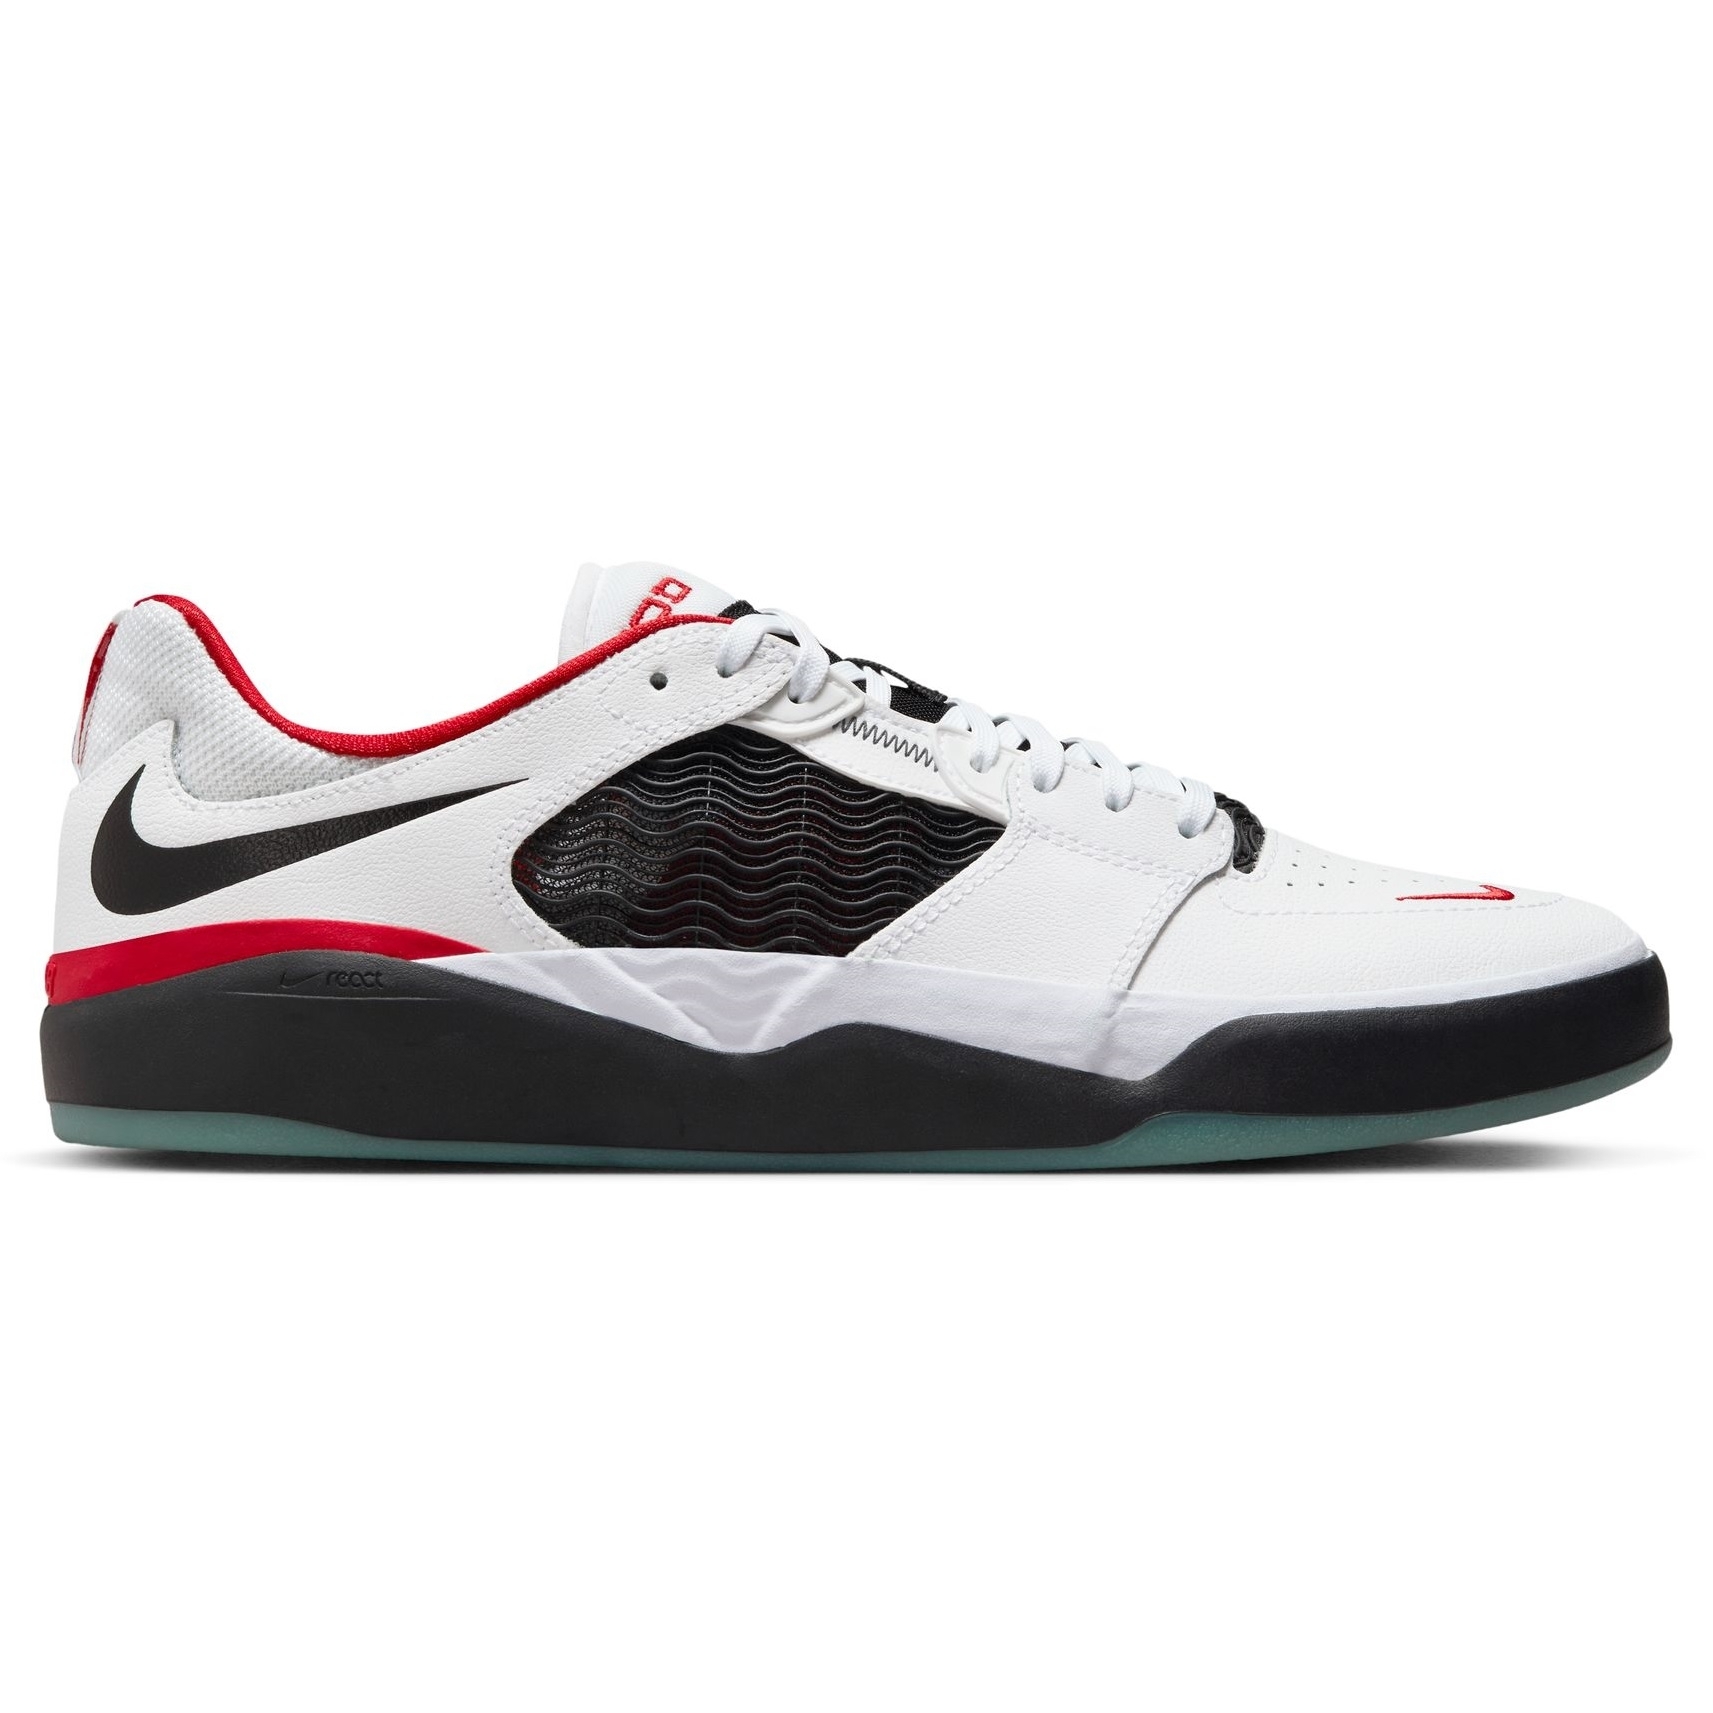 Nike SB Ishod Prm L (White/Black-University Red)